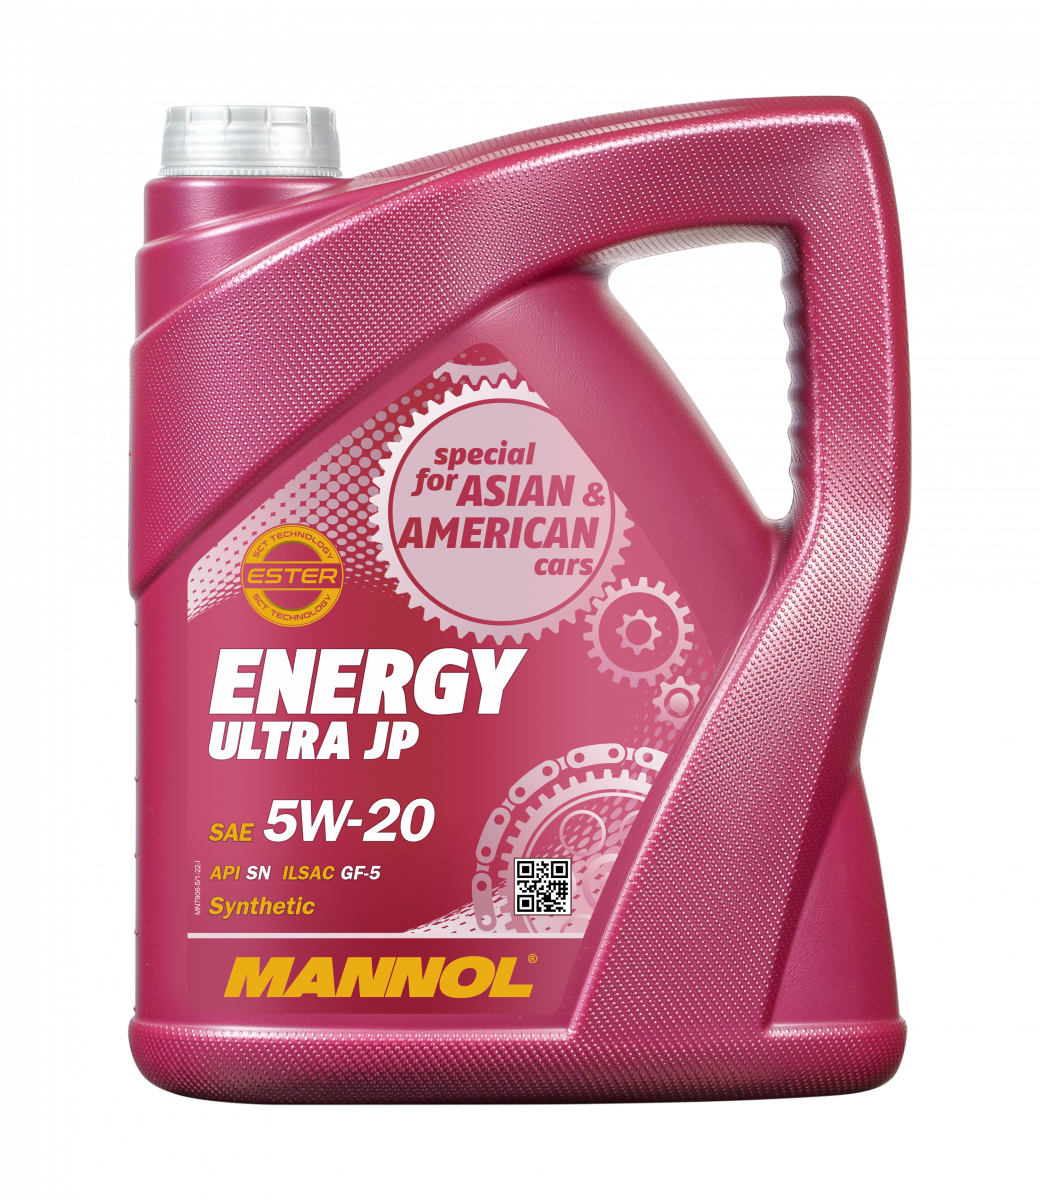 Mannol 5w 20 Energy